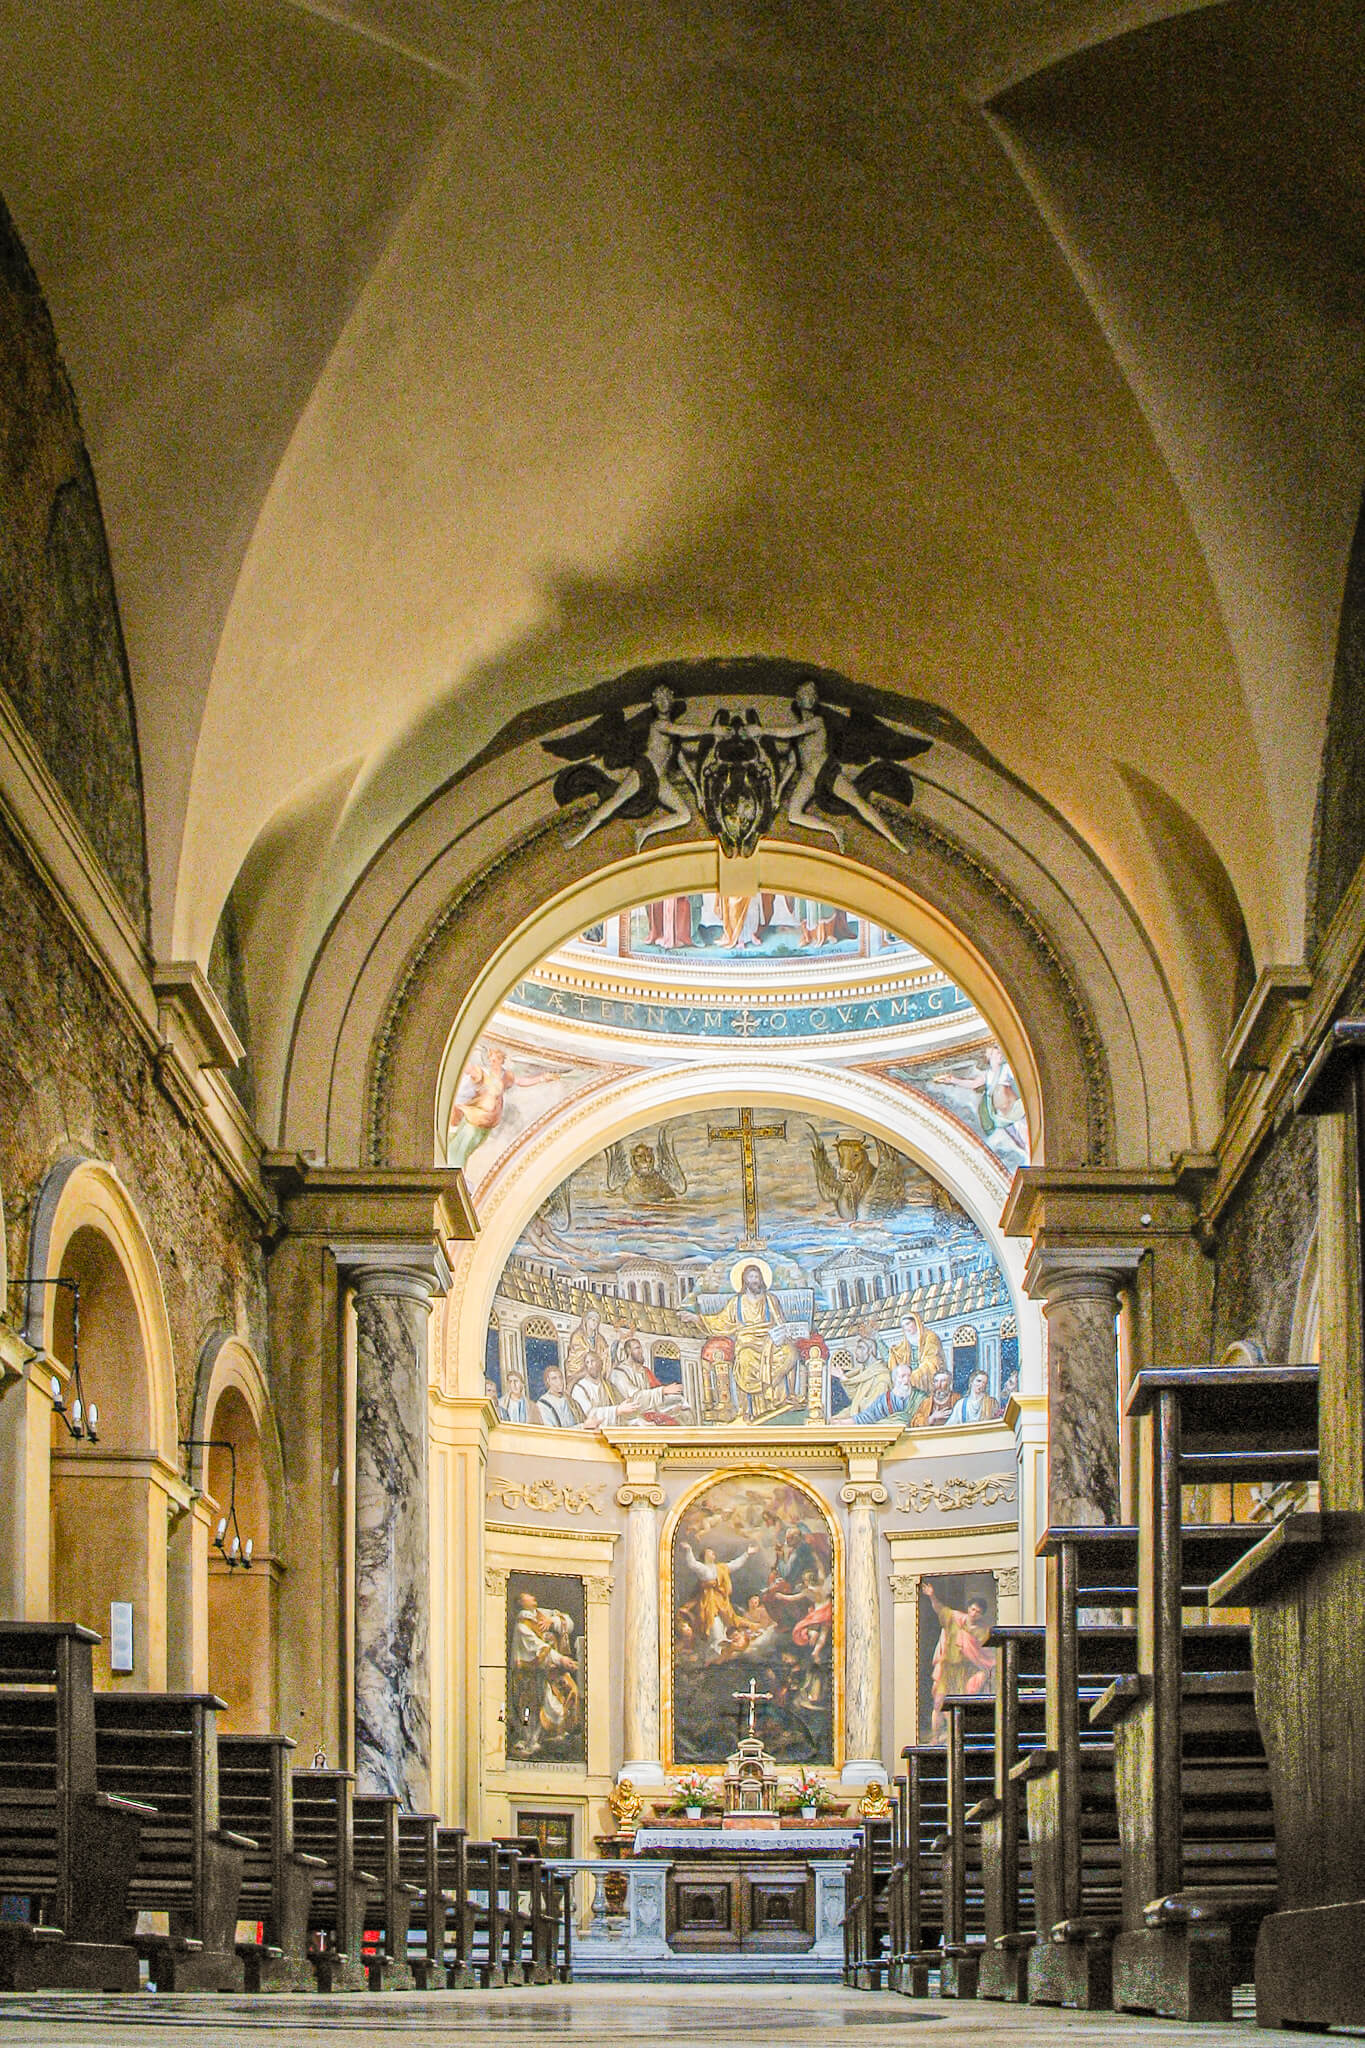 The interior of Santa Prudenziana, including the 4th century mosaics